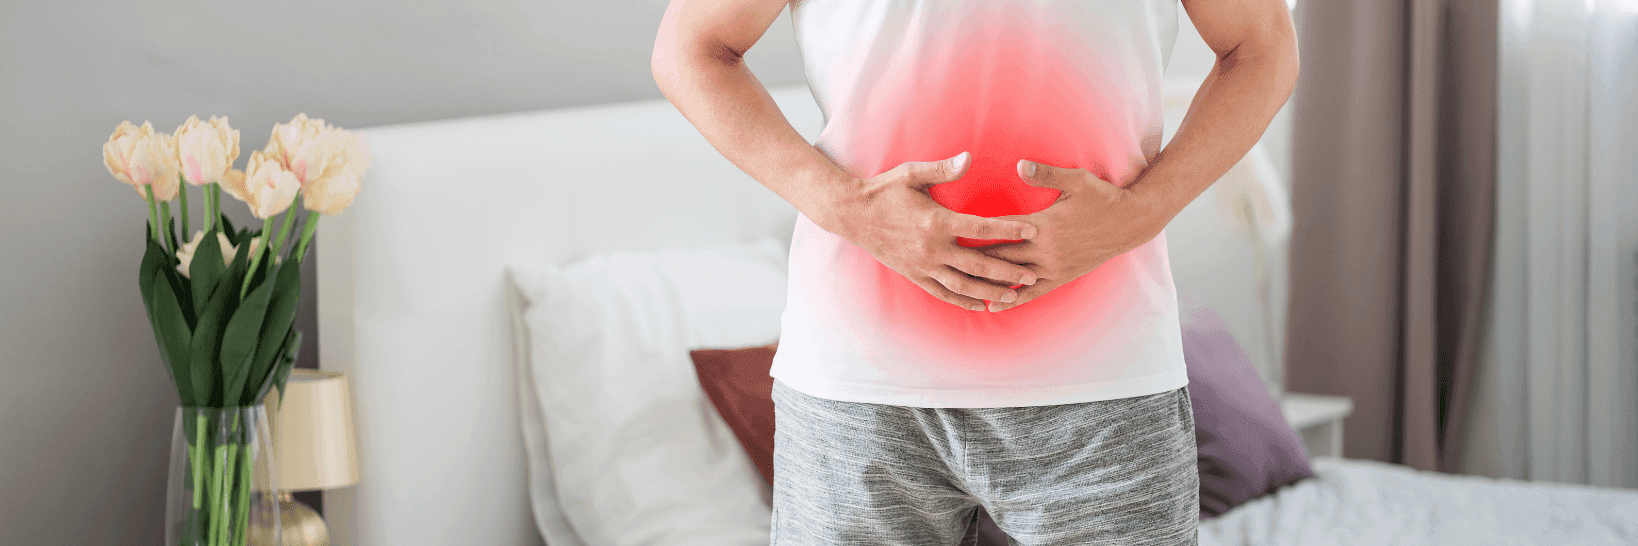 Ernährung bei chronisch entzündlichen Darmerkrankungen: Morbus Crohn und Colitits Ulcerosa